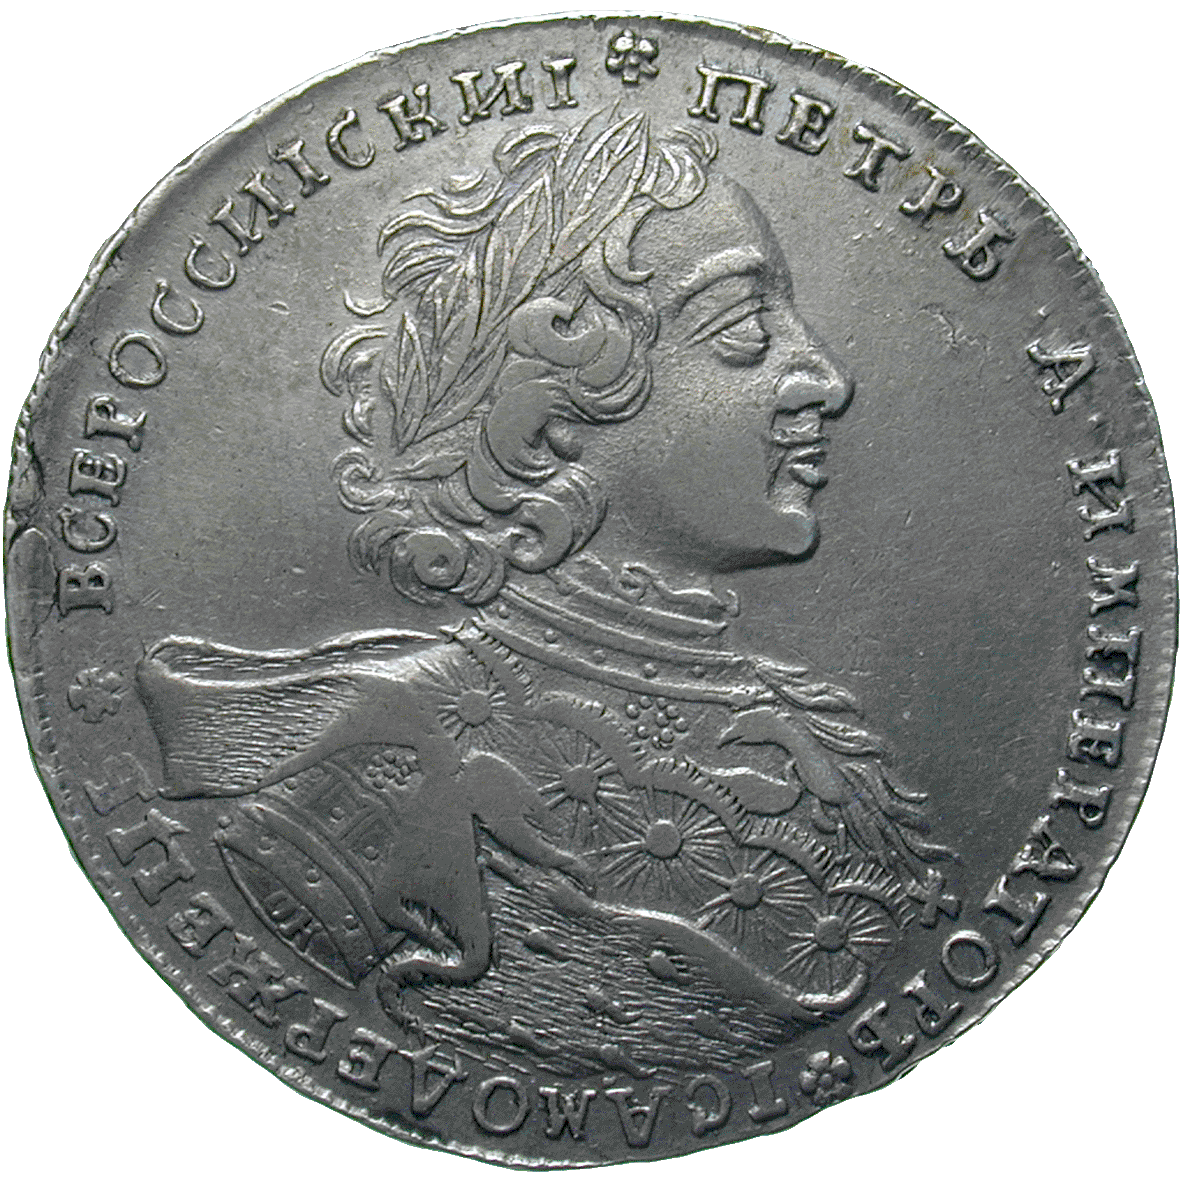 Zarenreich Russland, Peter I. der Grosse, Rubel 1723 (obverse)